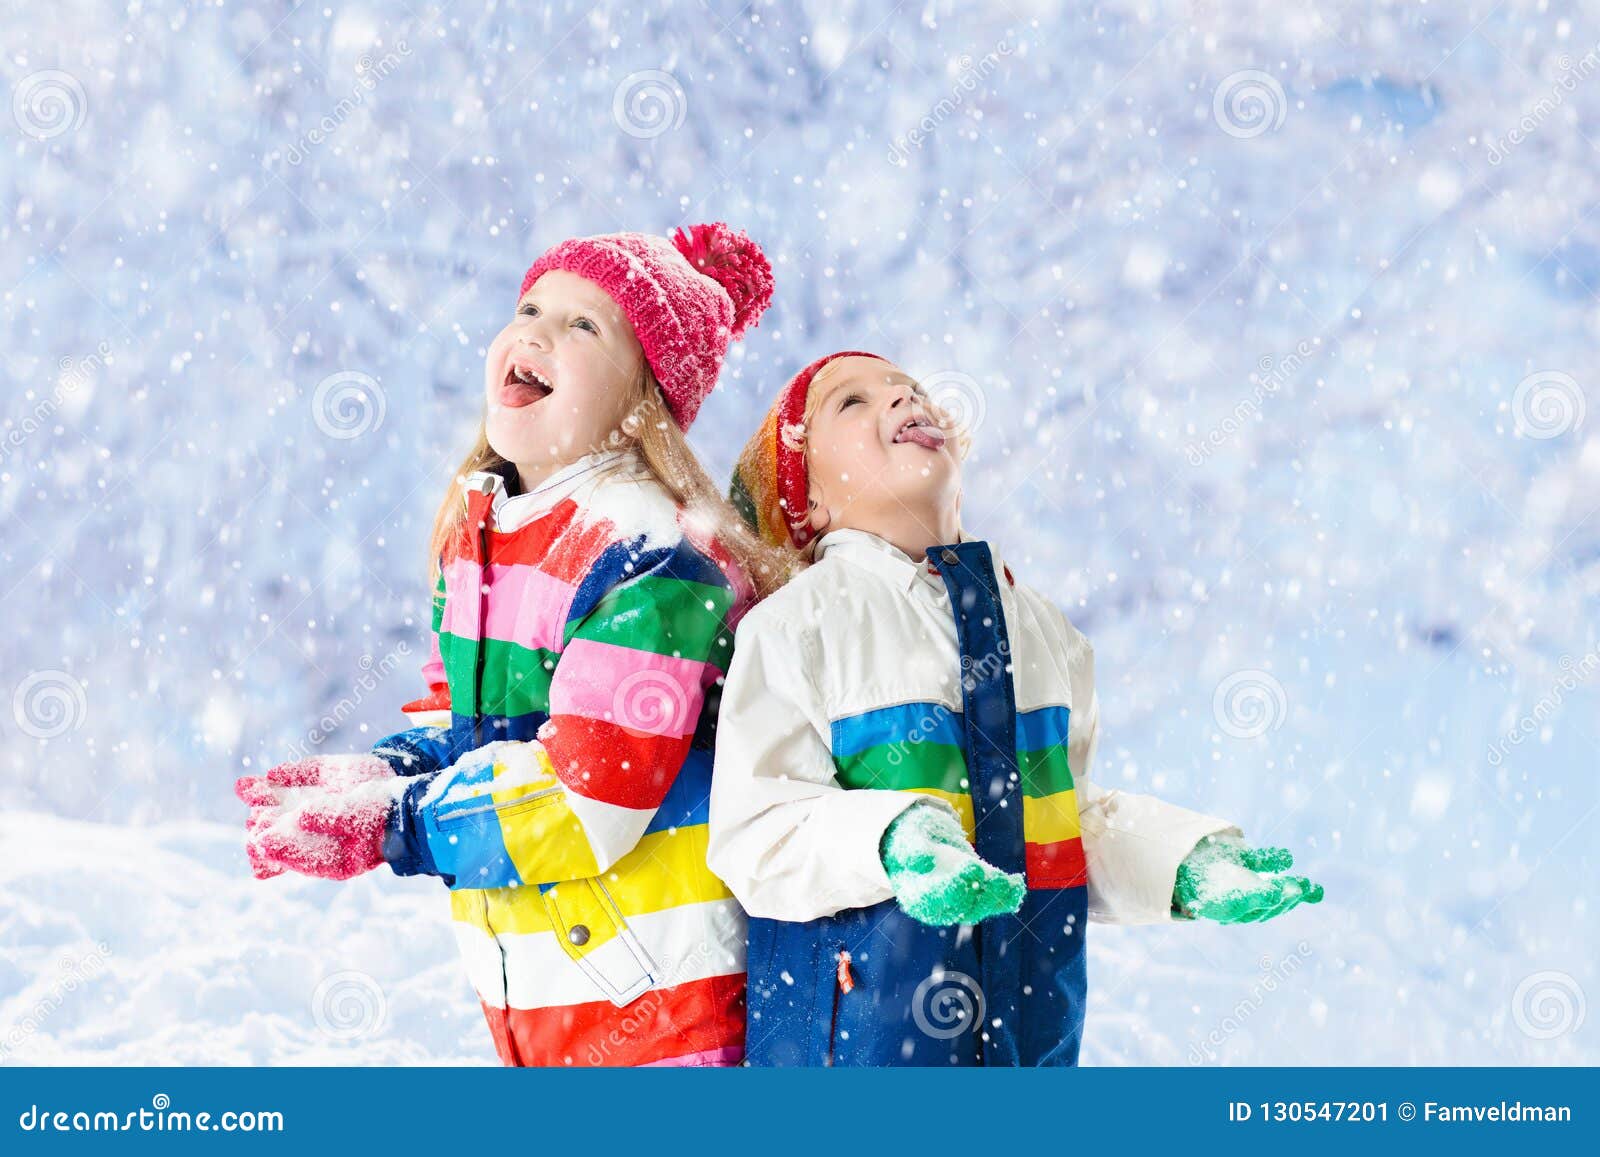 Geitjes Die in Sneeuw De Kinderen Spelen in De Winter Stock Afbeelding - Image of activiteit: